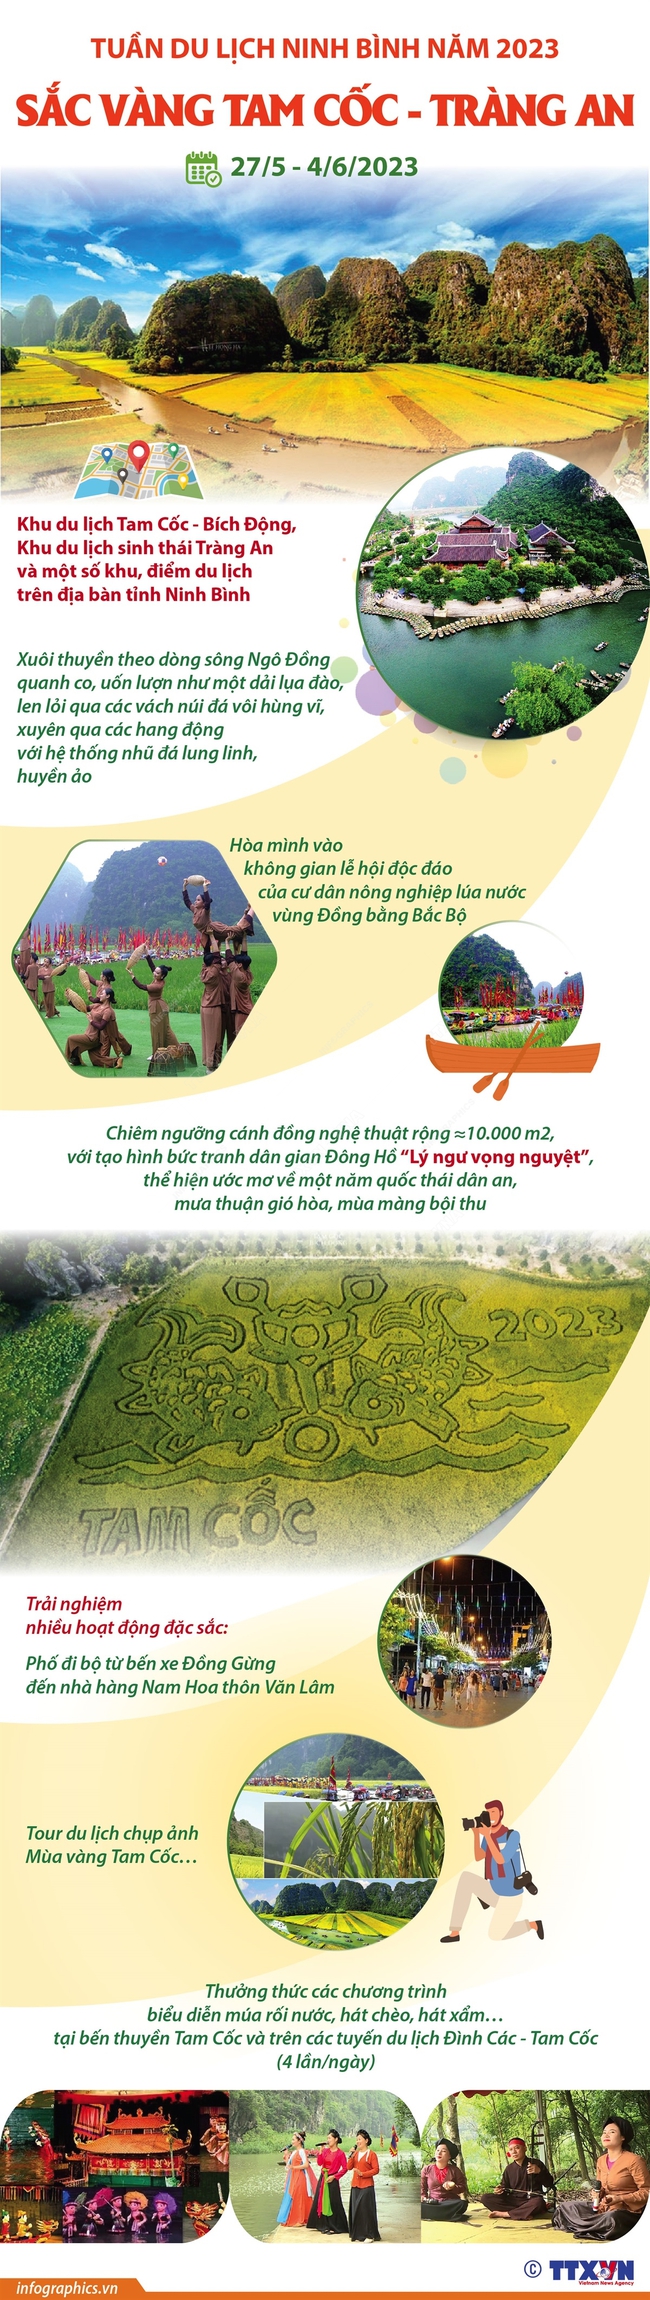 Tuần du lịch Ninh Bình năm 2023: Sắc vàng Tam Cốc - Tràng An - Ảnh 1.